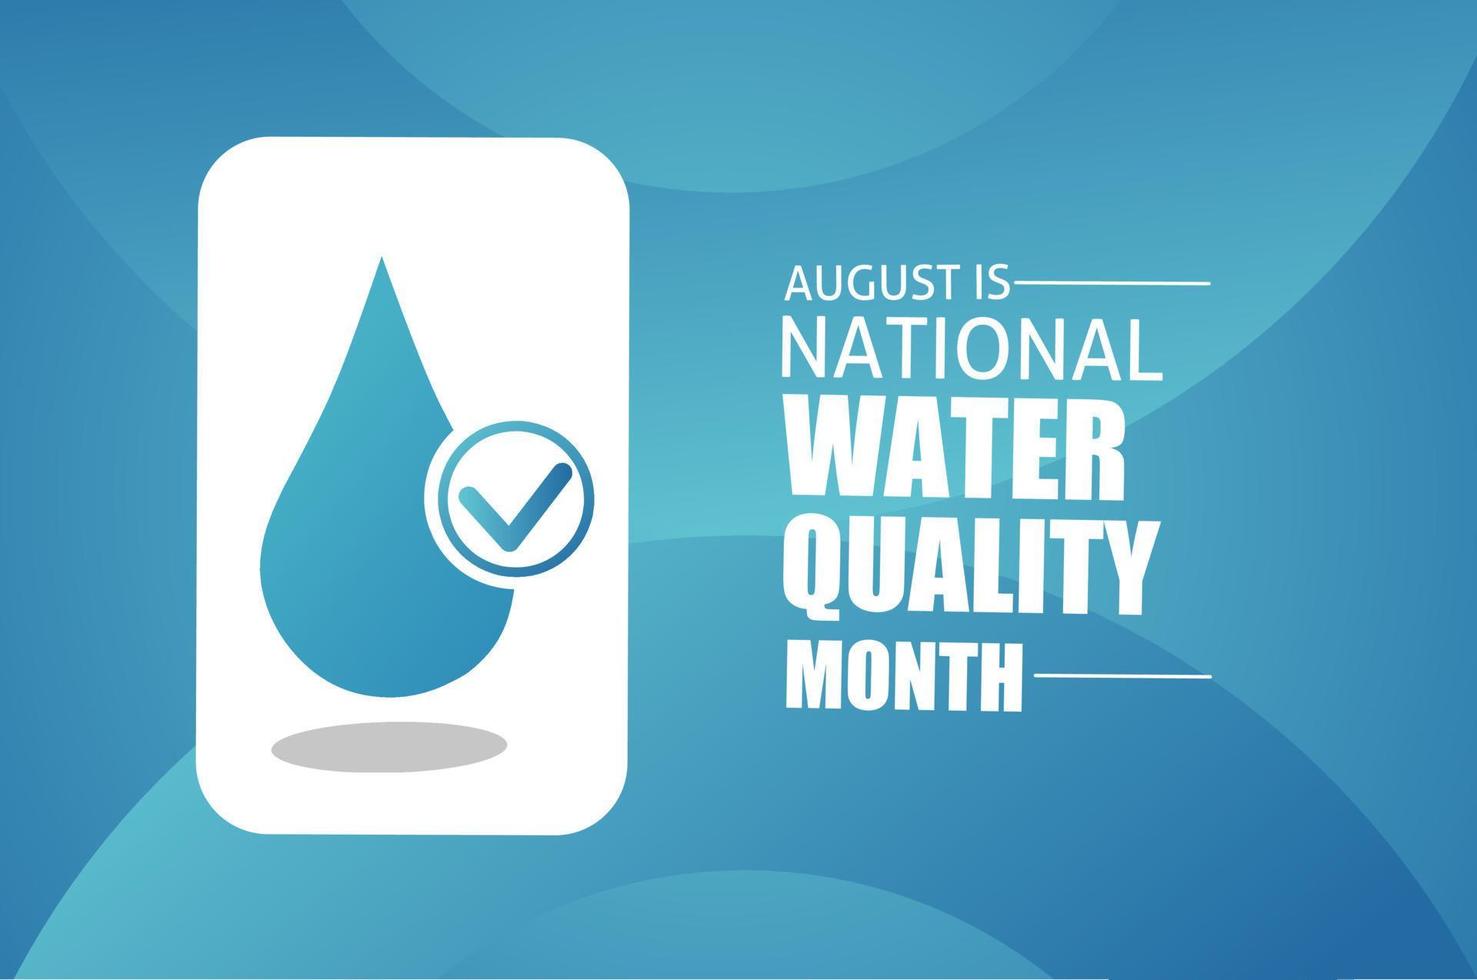 August ist die Vektorillustration des nationalen Wasserqualitätsmonats vektor